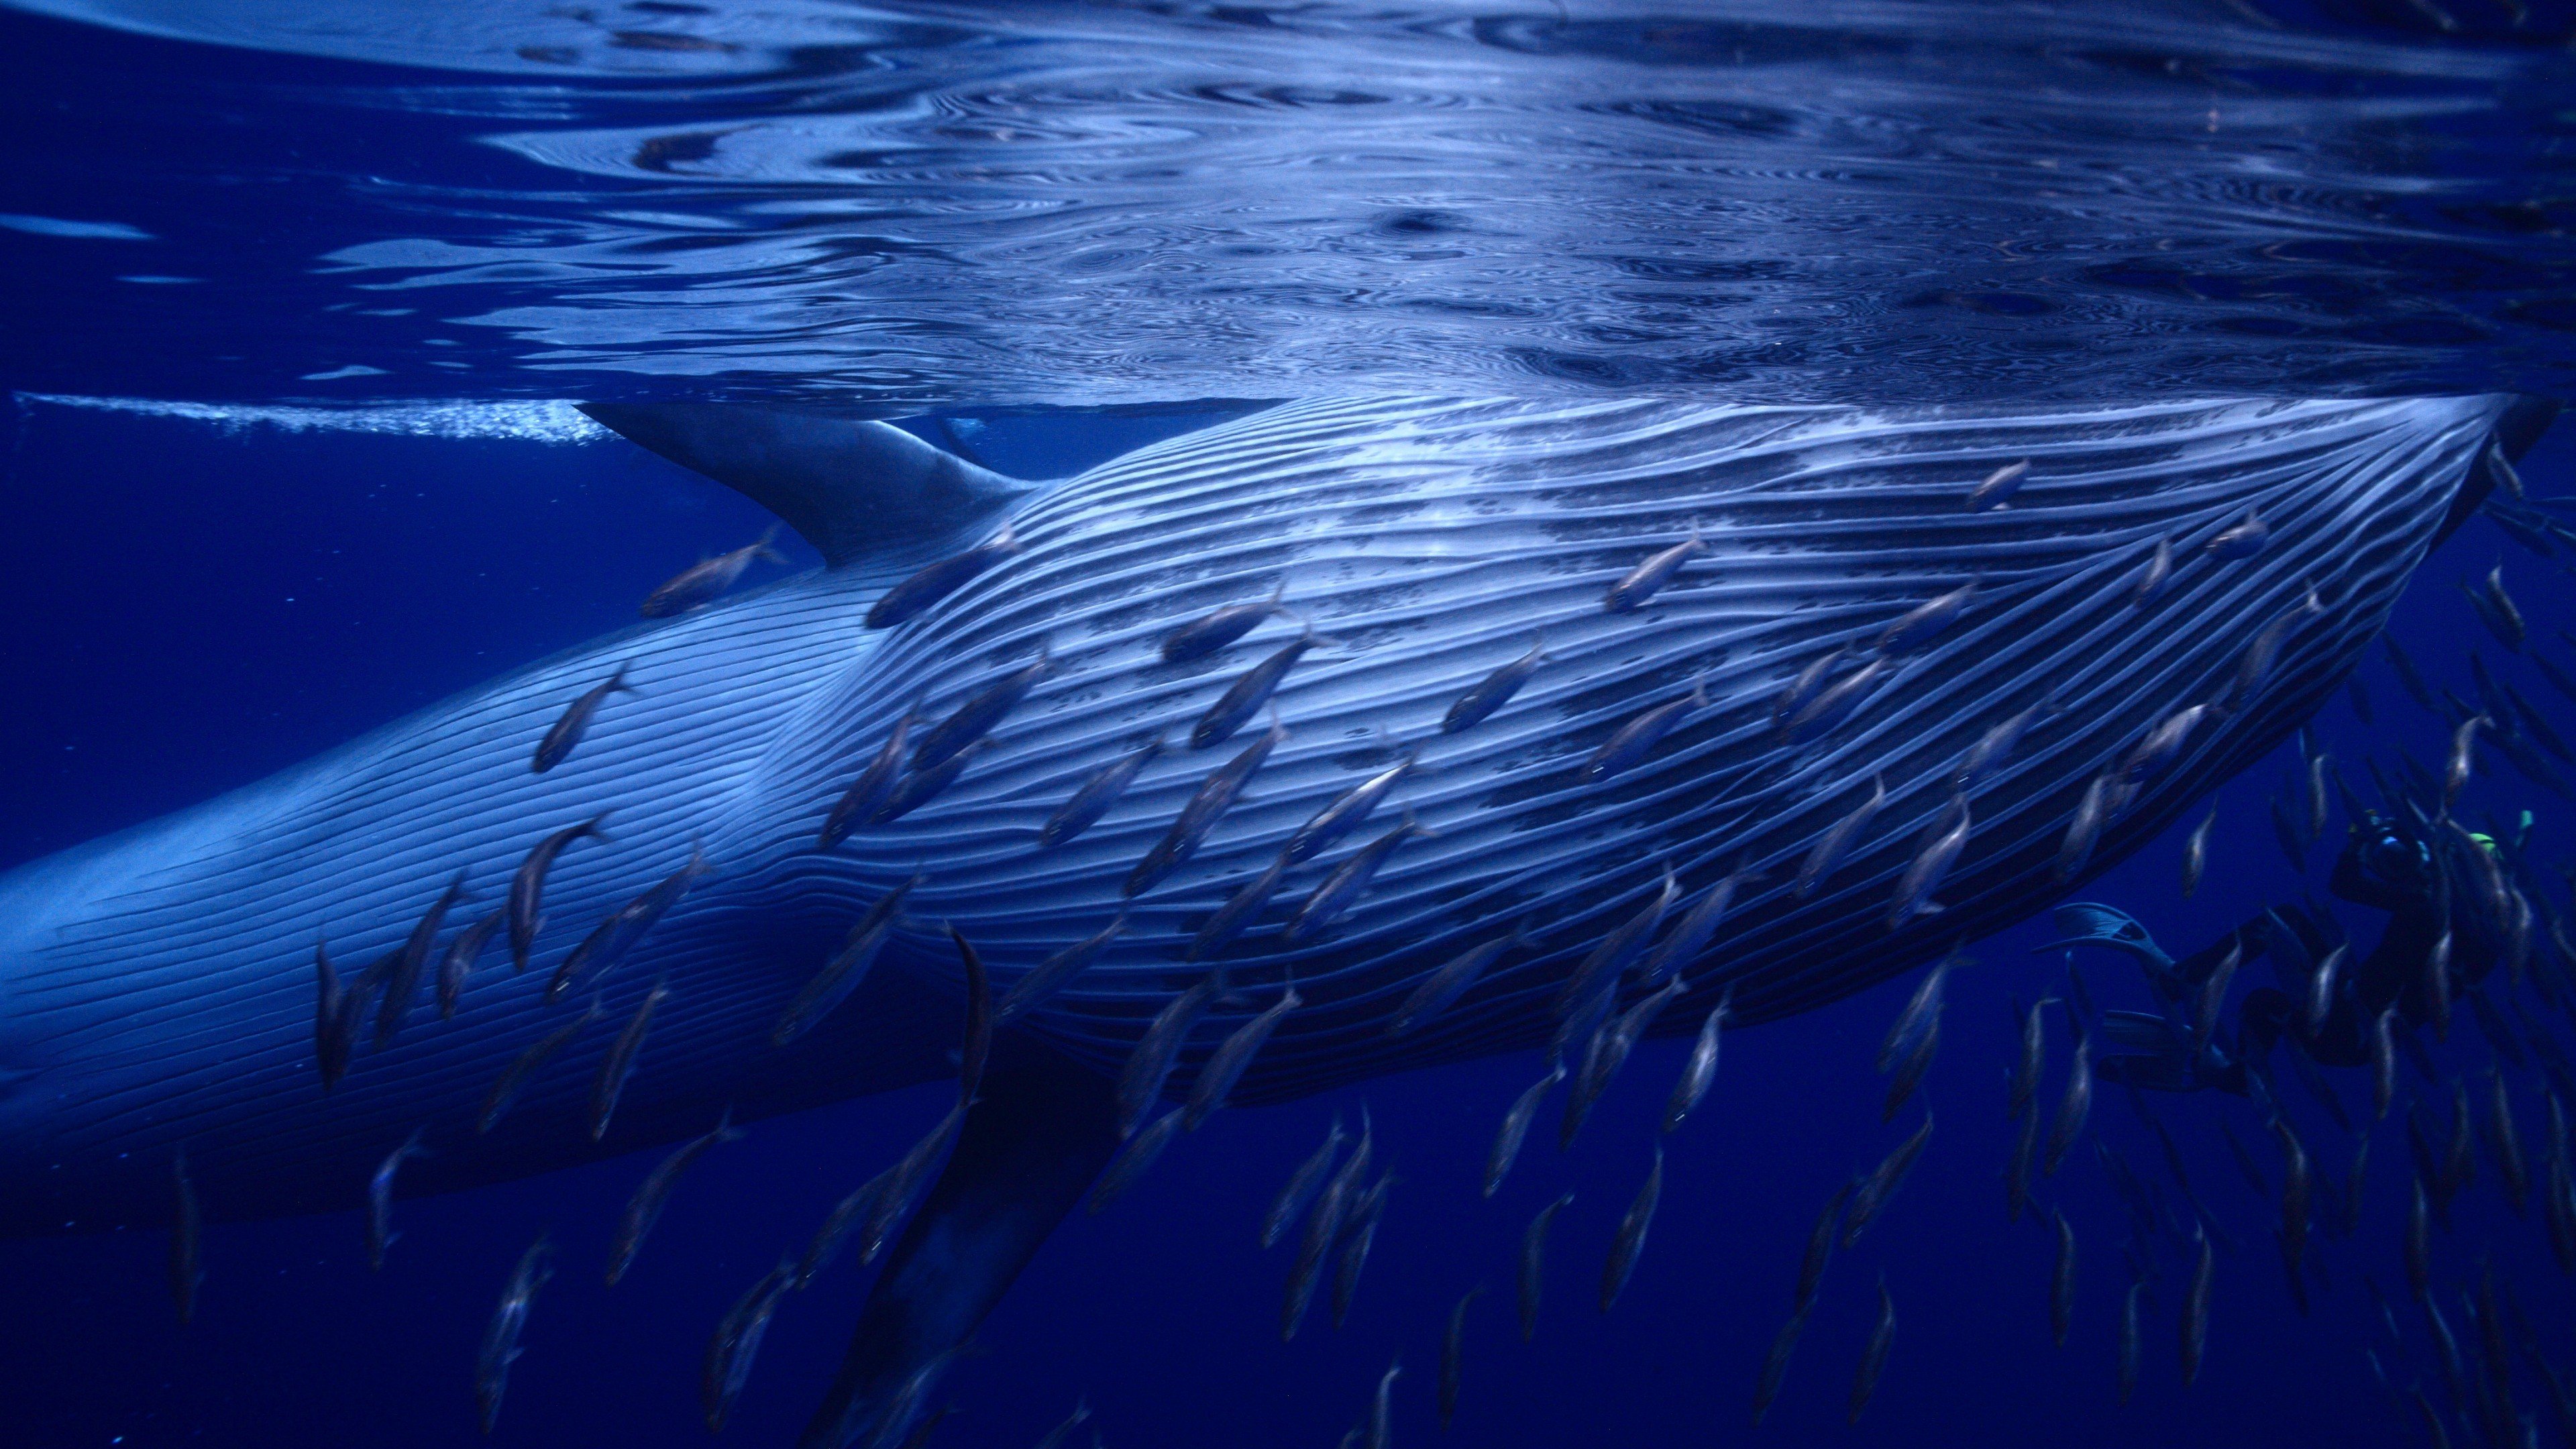 Fondos de pantalla Whale under the ocean